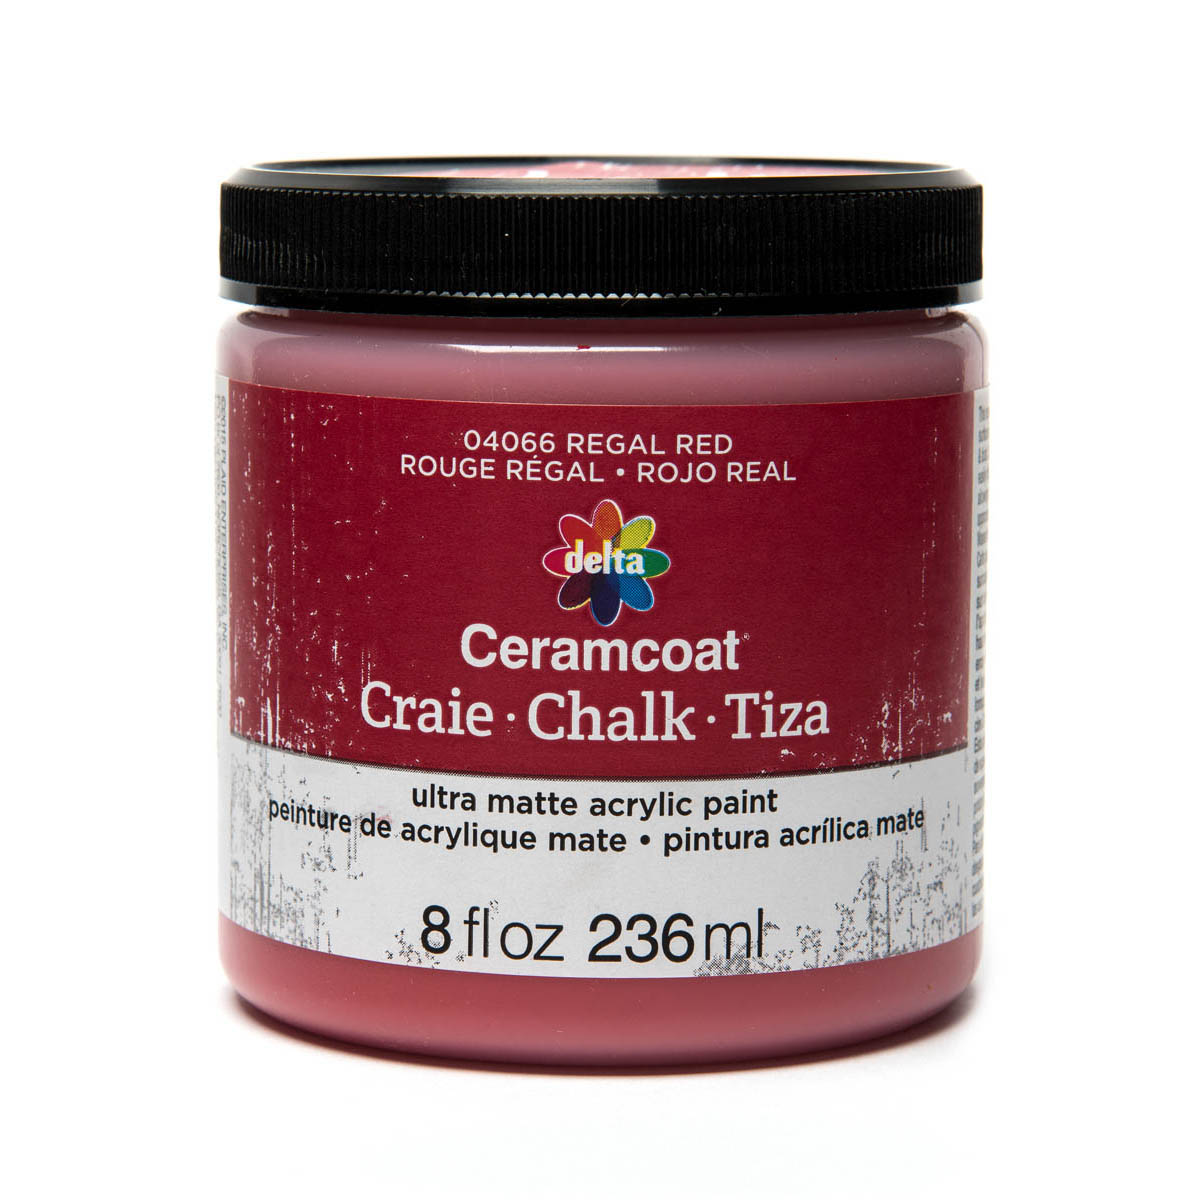 Delta Ceramcoat ® Chalk - Regal Red, 8 oz. - 04066